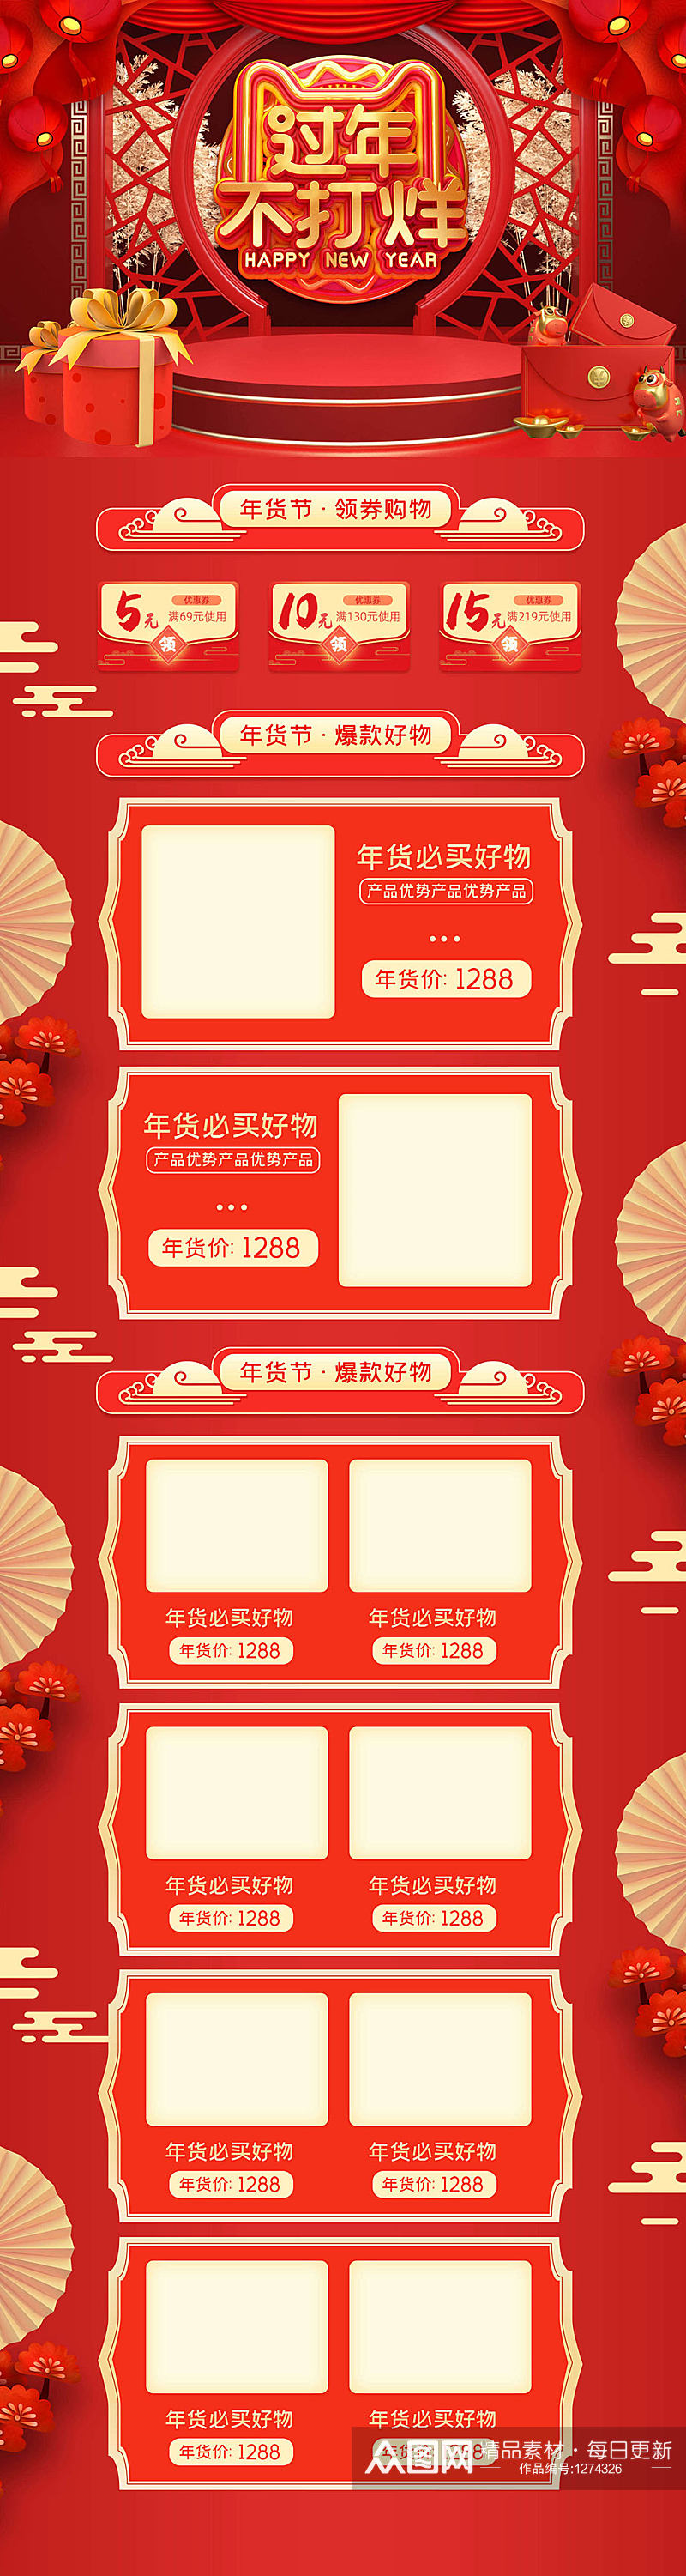 过年不打烊红色背景春节促销海报素材